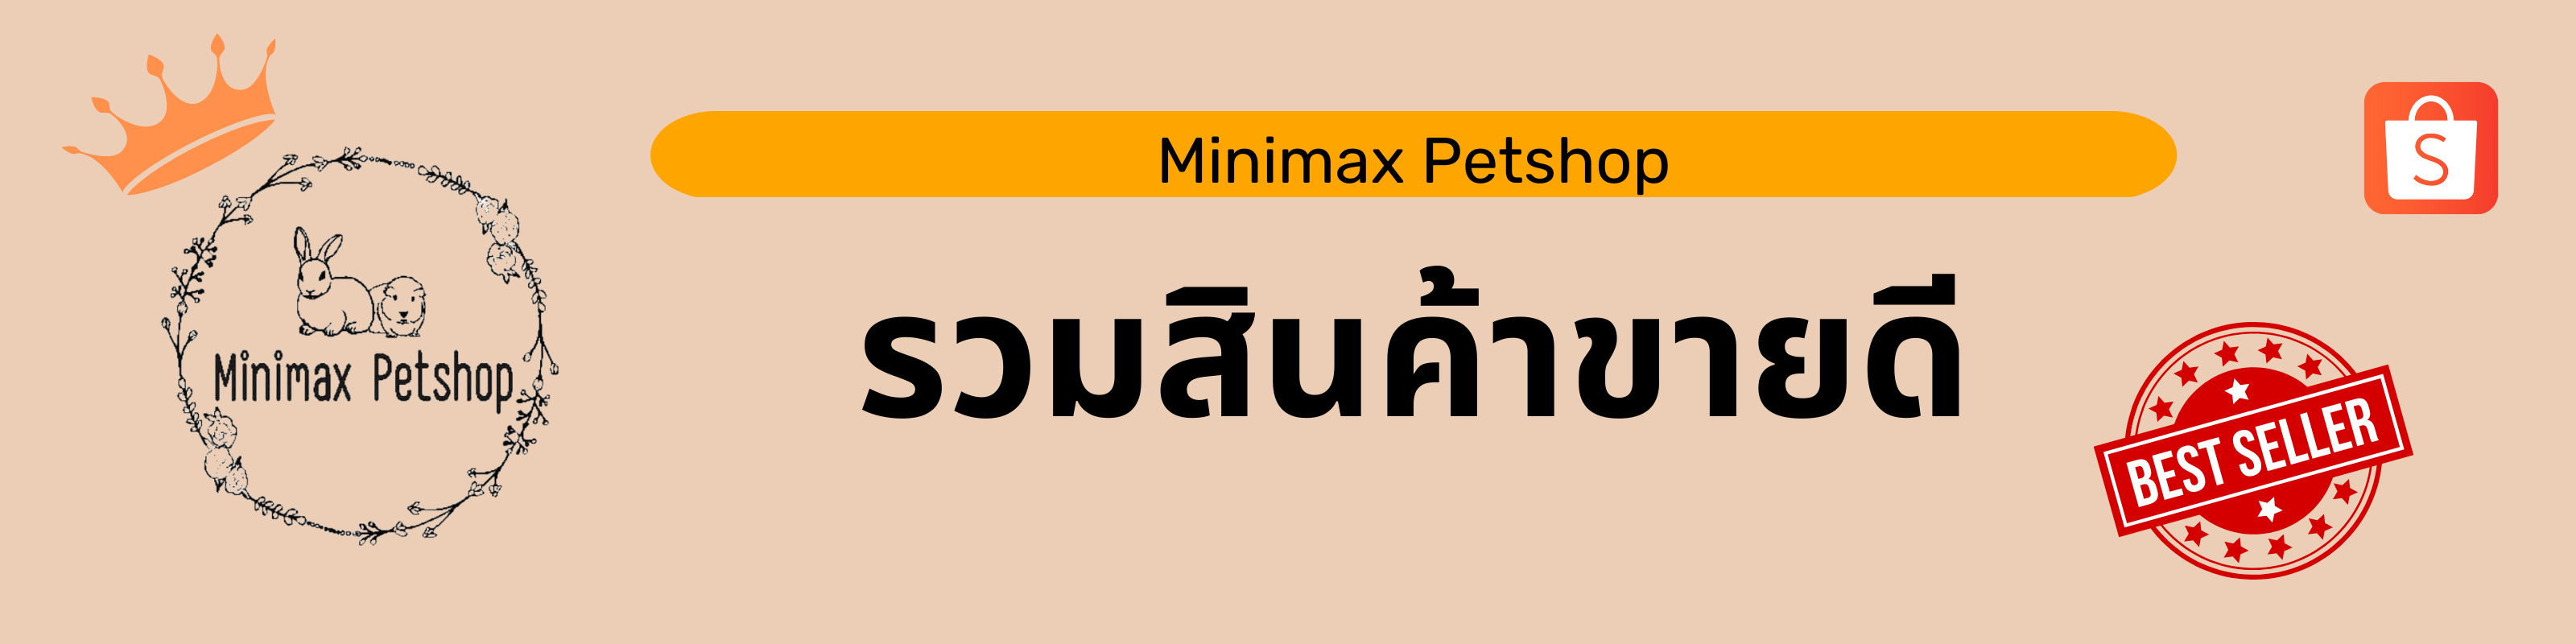 ป้ายโปรโมชัน Minimax Petshop